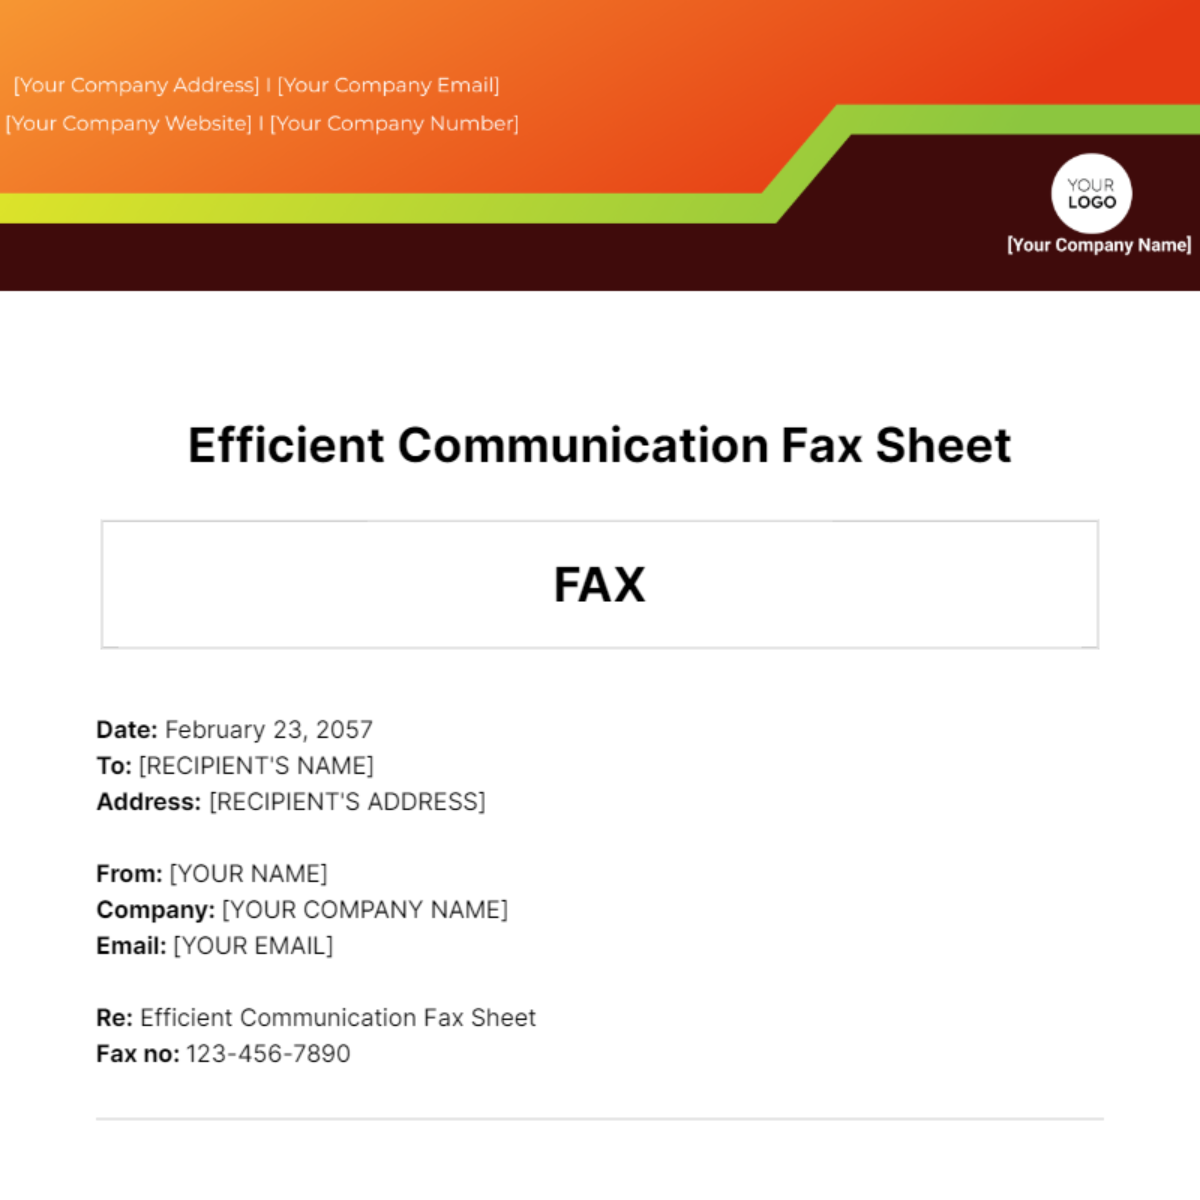 Efficient Communication Fax Sheet Template